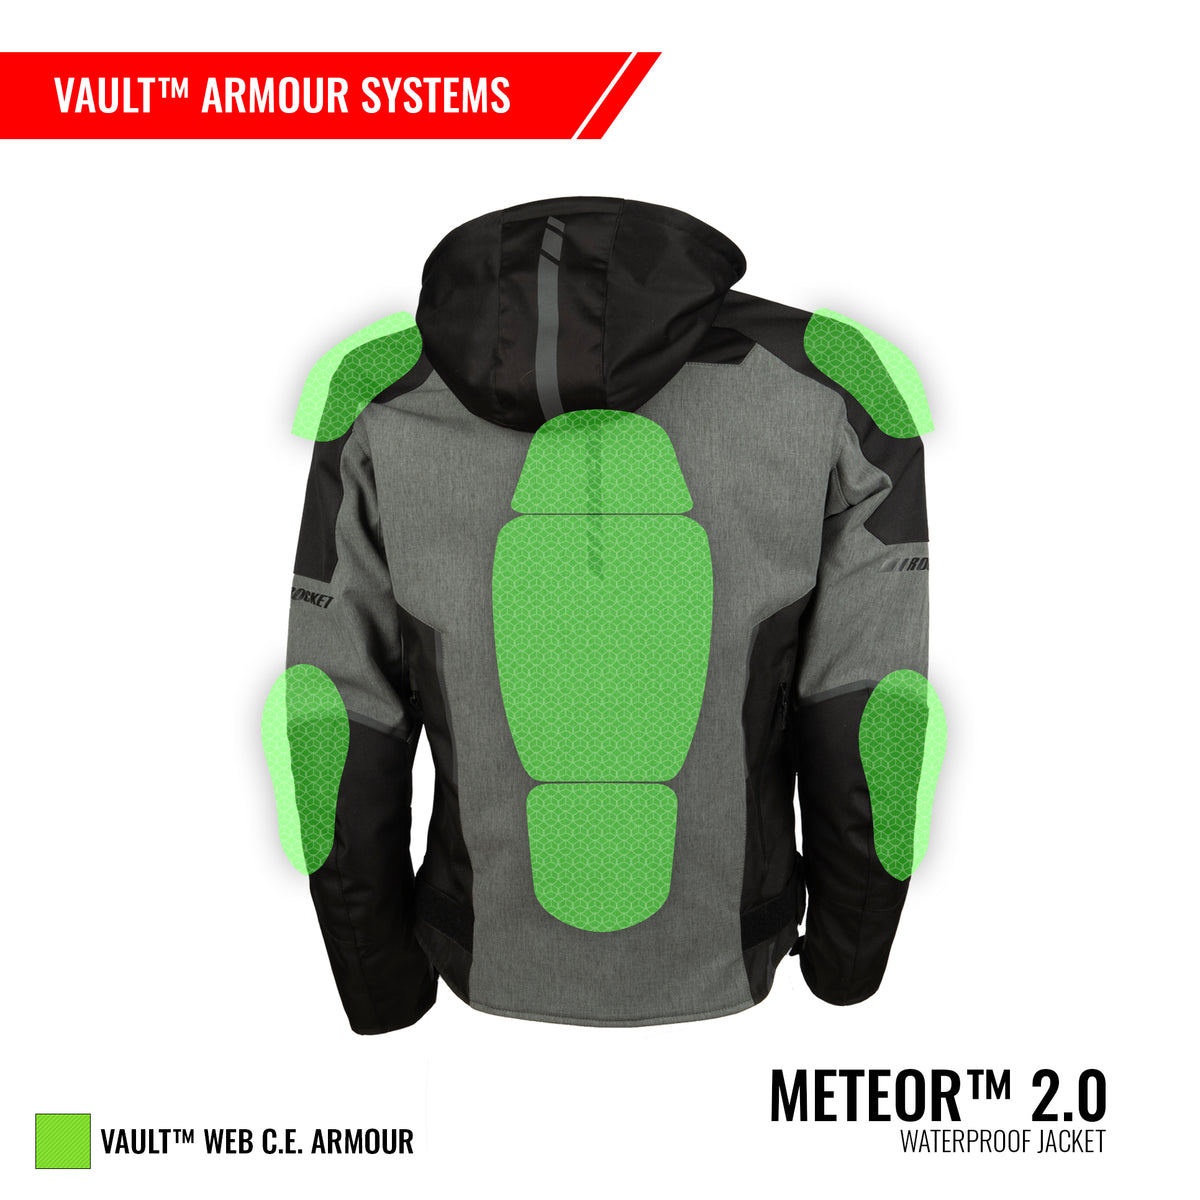 Meteor™ 2.0 Waterproof Jacket